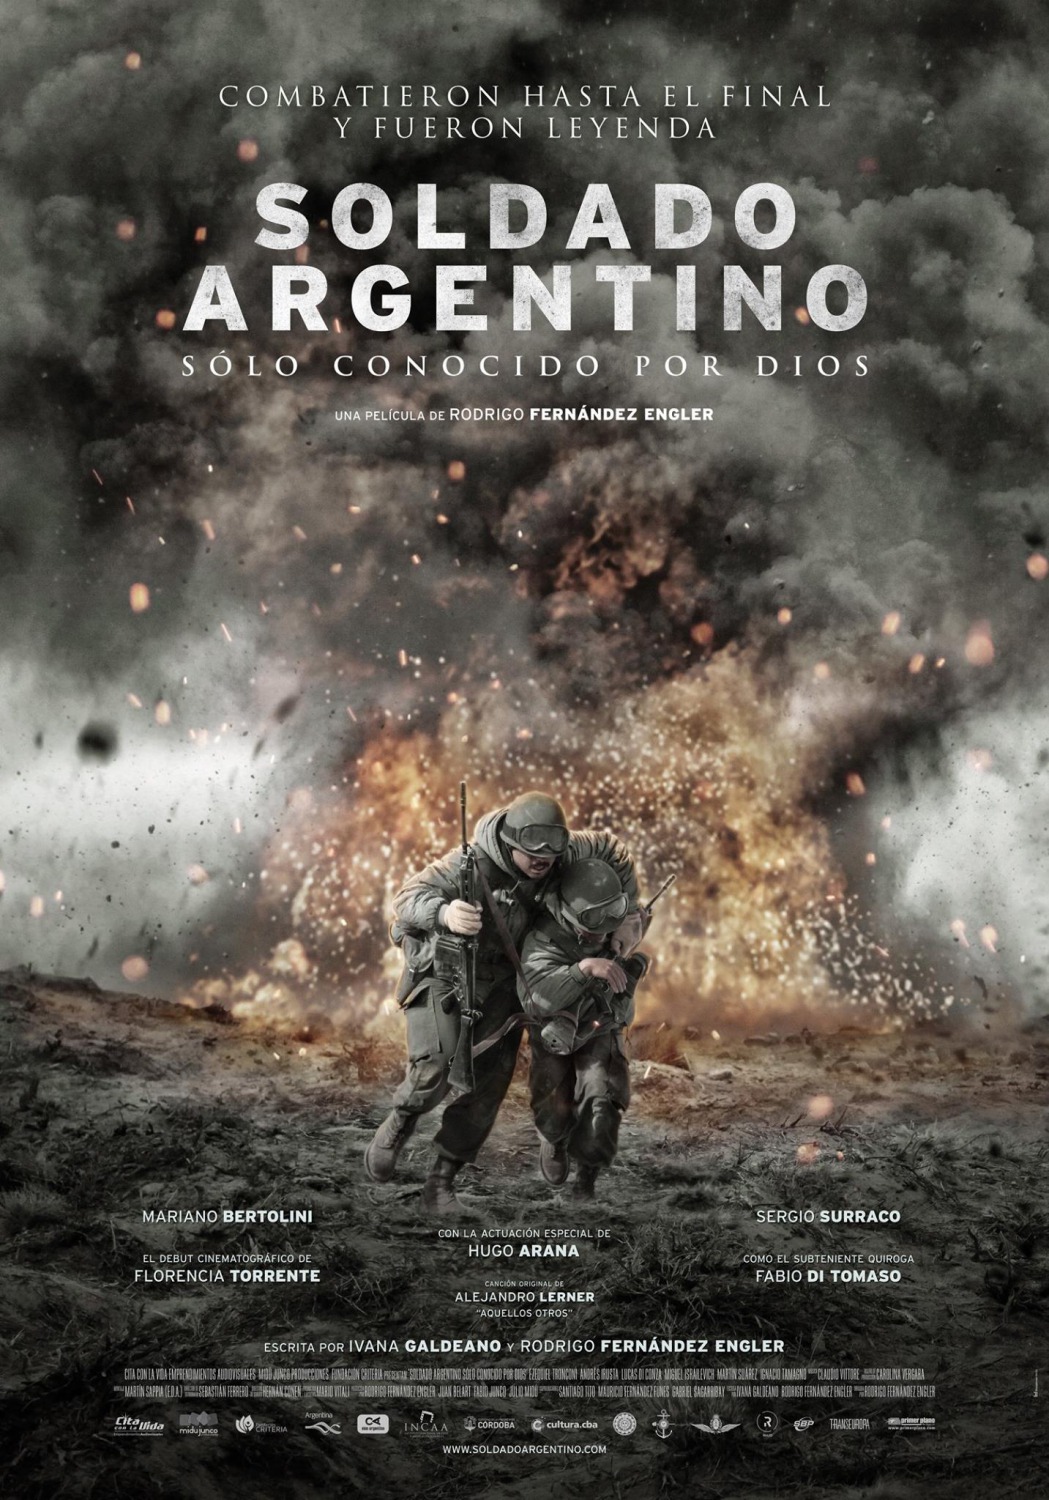 Extra Large Movie Poster Image for Soldado Argentino solo conocido por Dios (#2 of 2)